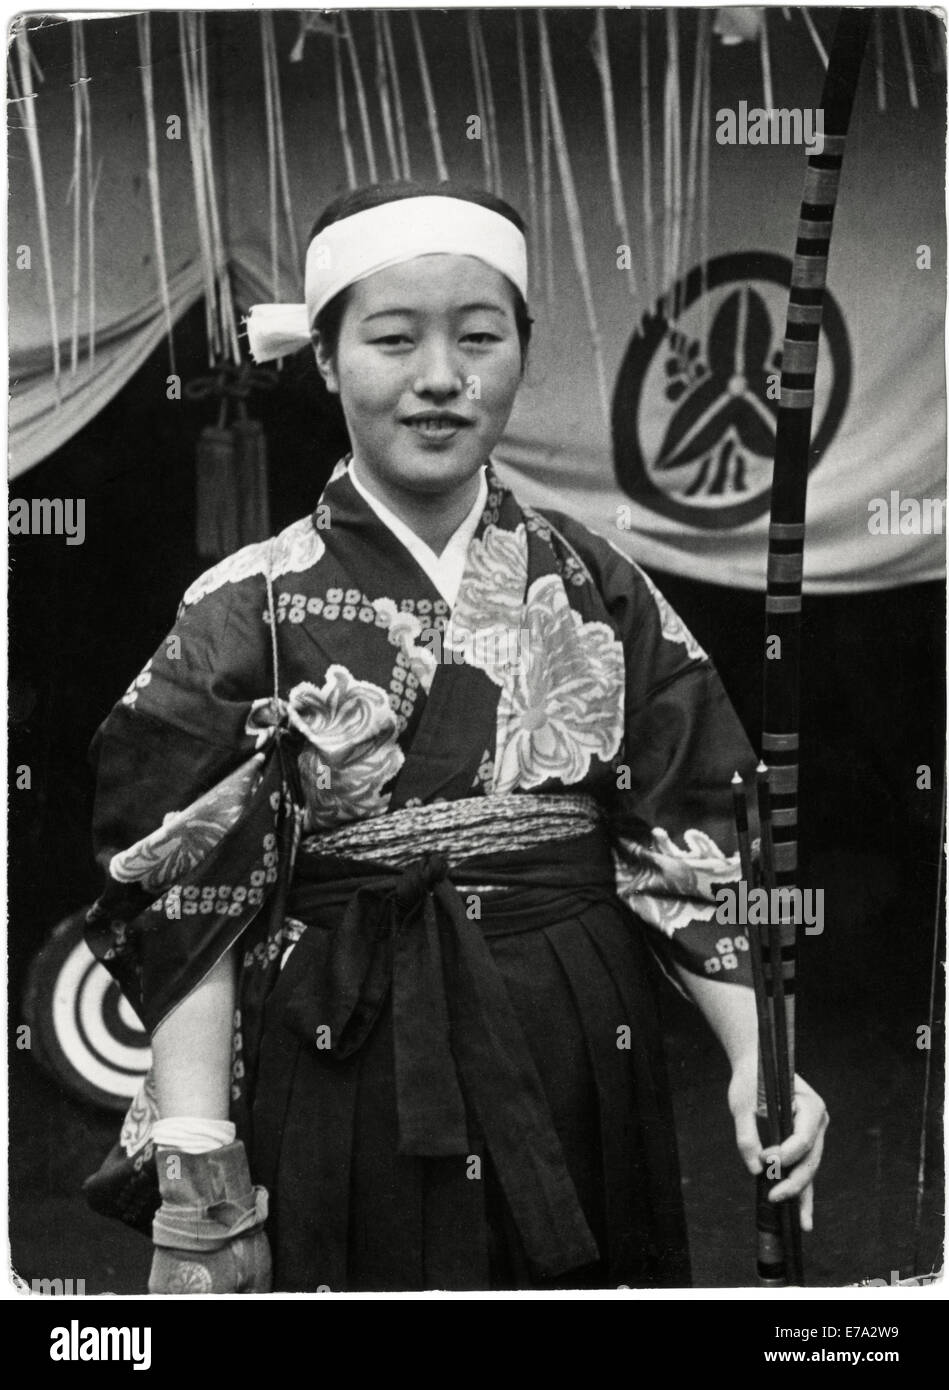 Giapponese ragazza adolescente in abito tradizionale con apparecchiature di tiro con l'arco, Giappone, 1935 Foto Stock